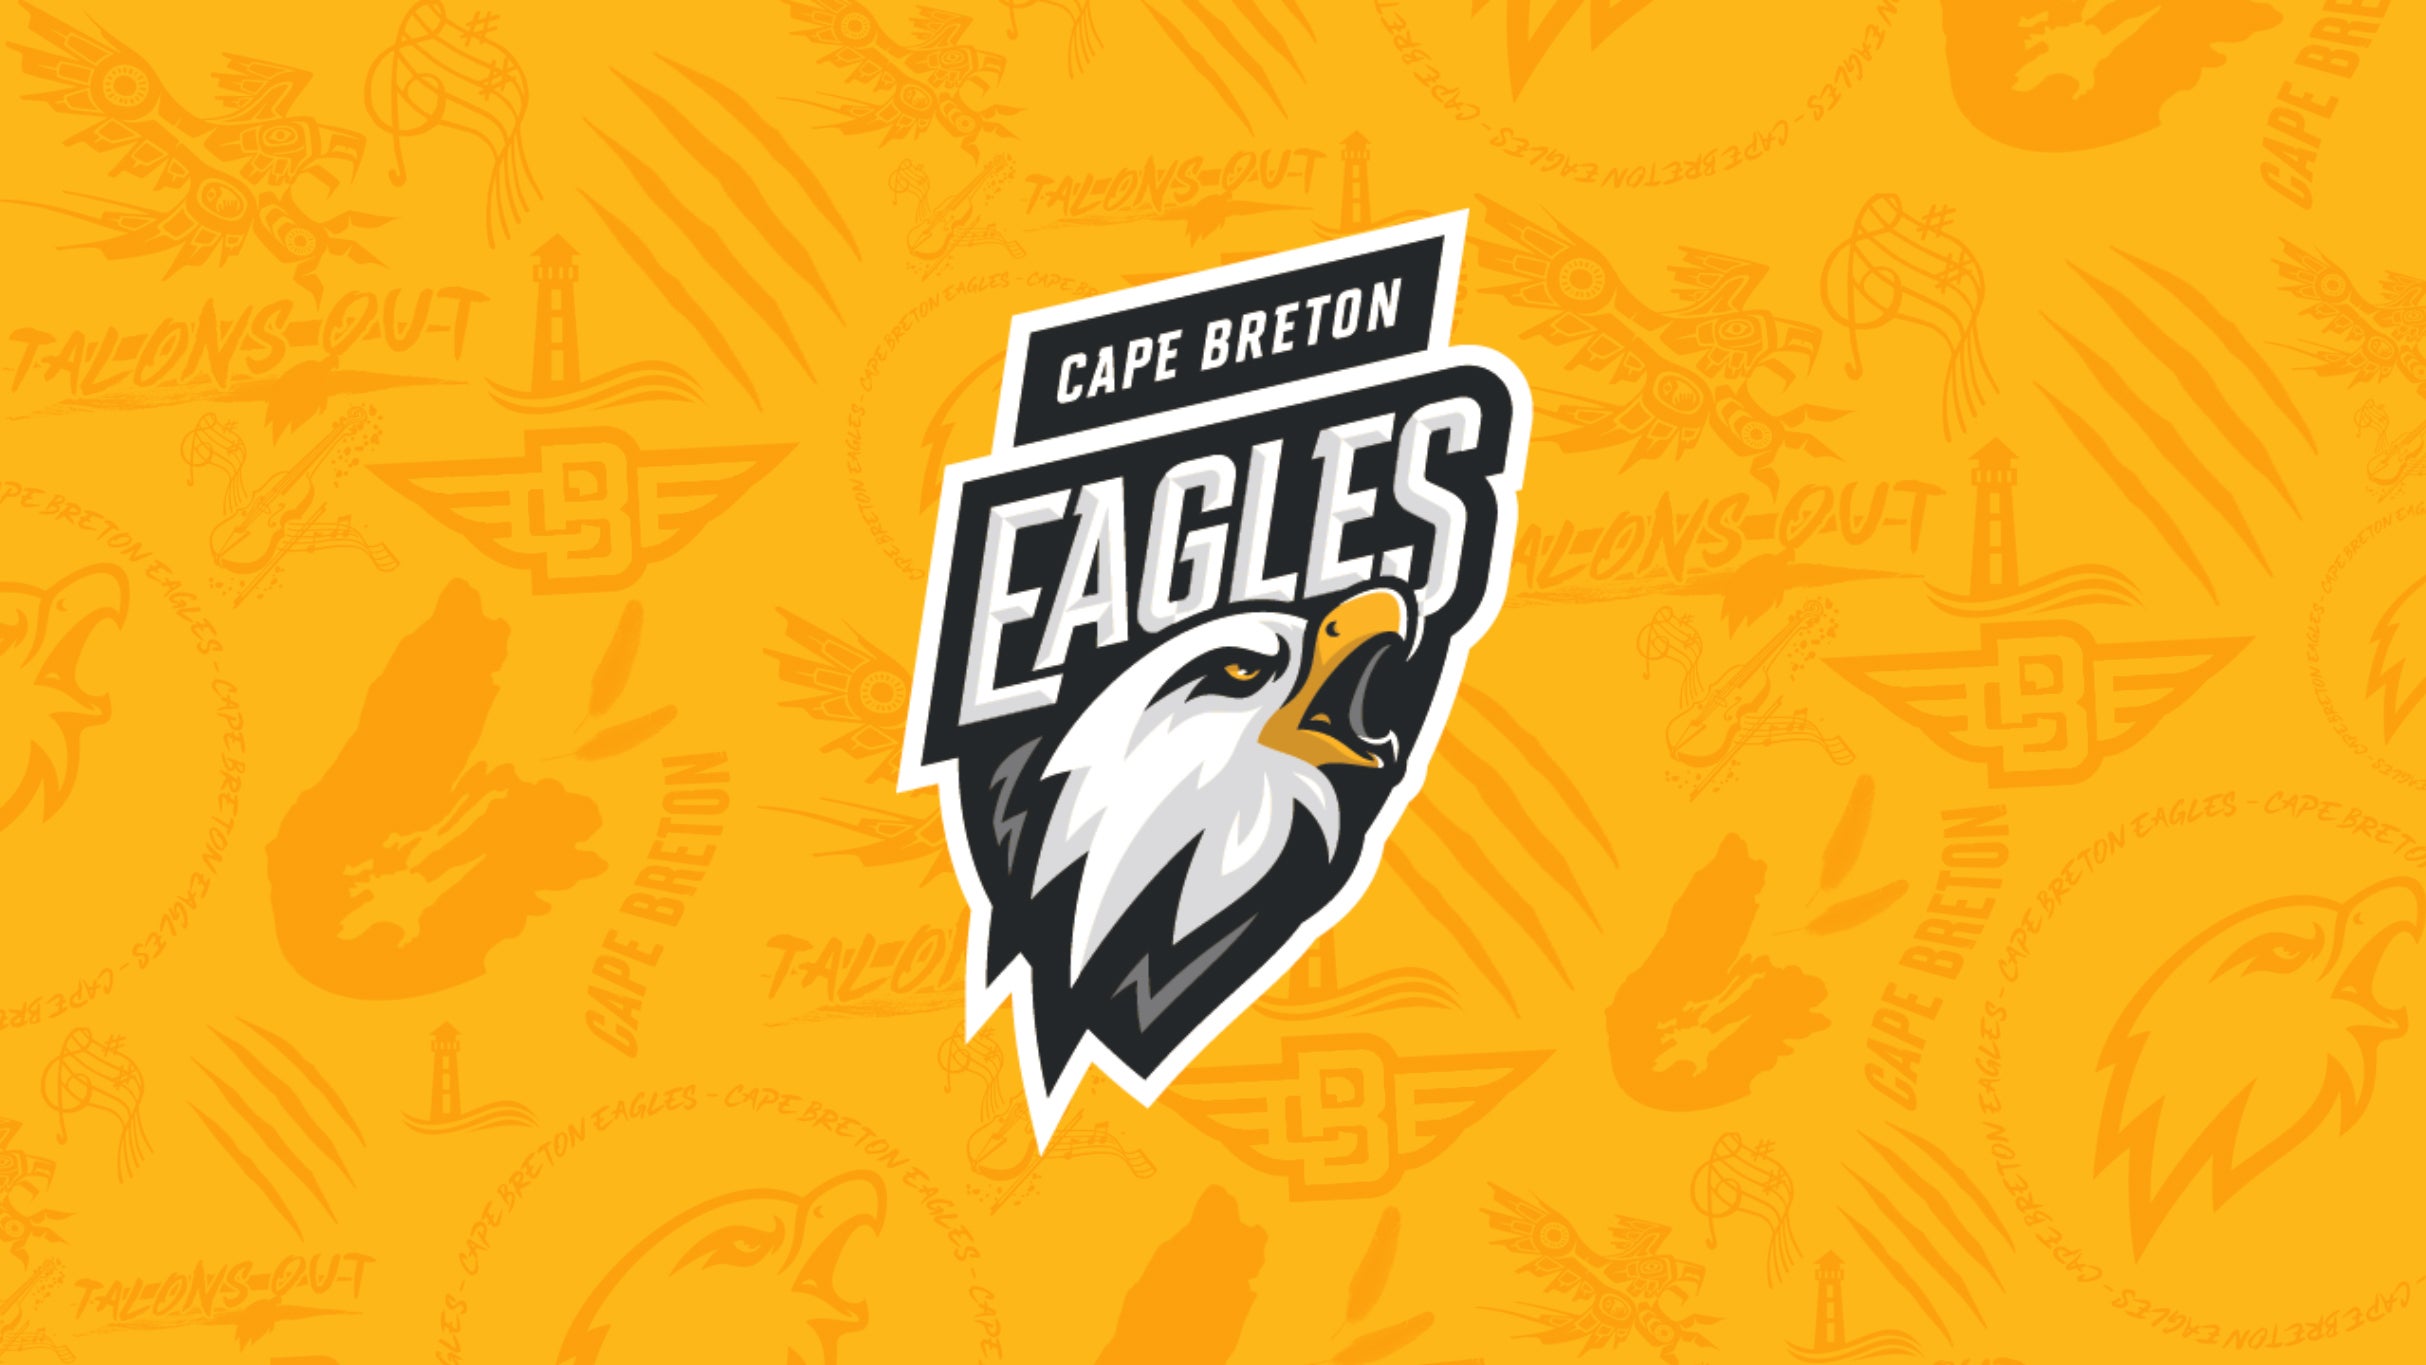 Cape Breton Eagles vs. Acadie-Bathurst Titans